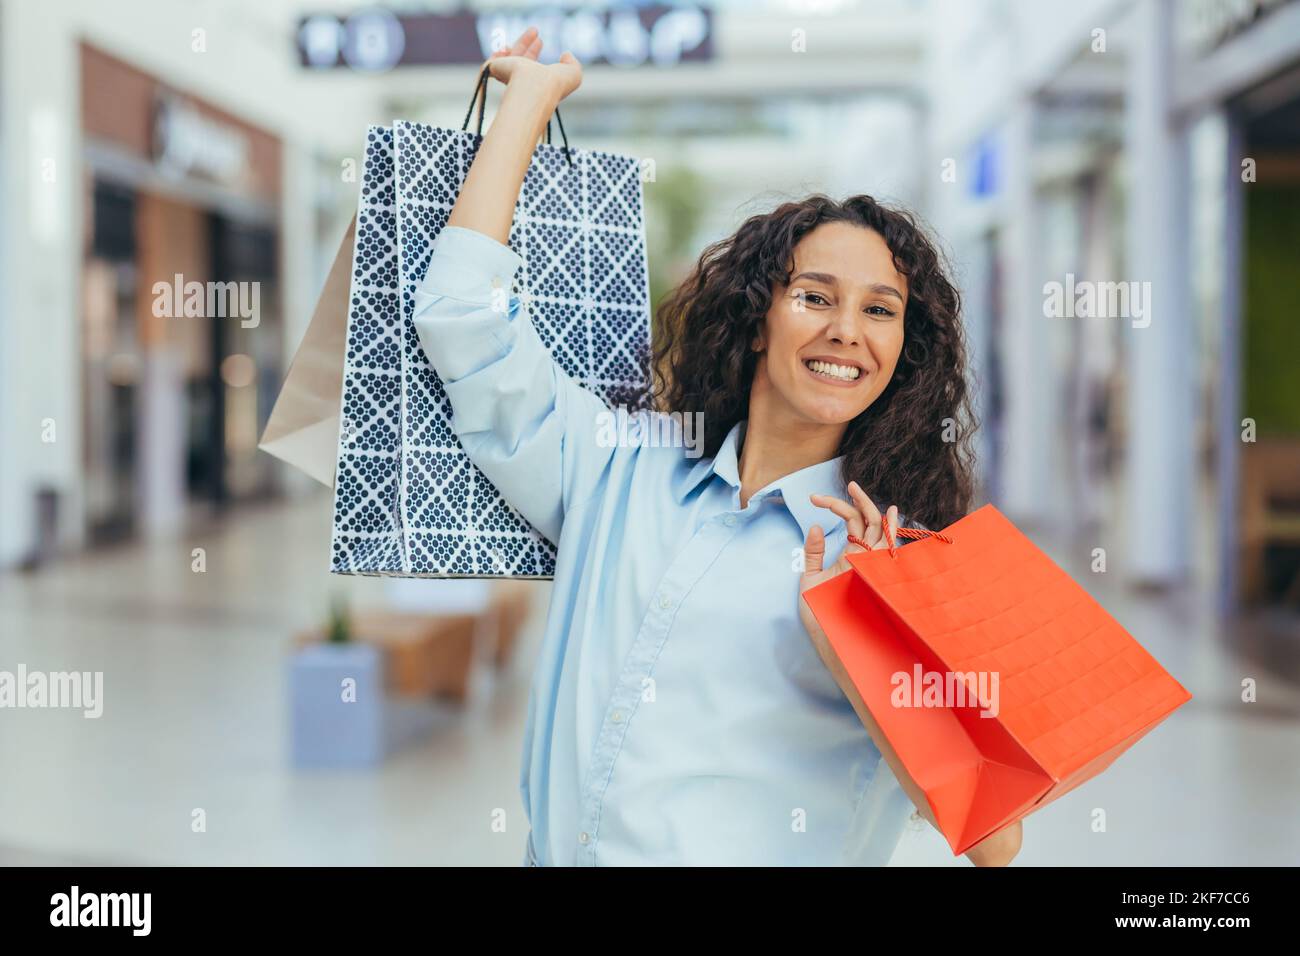 Soldes des fêtes. Vendredi noir. Bonne jeune femme hispanique magasiner dans un supermarché. Elle tient des sacs de shopping en papier coloré dans ses mains, les a levés, se réjouit, sourit à la caméra. Banque D'Images